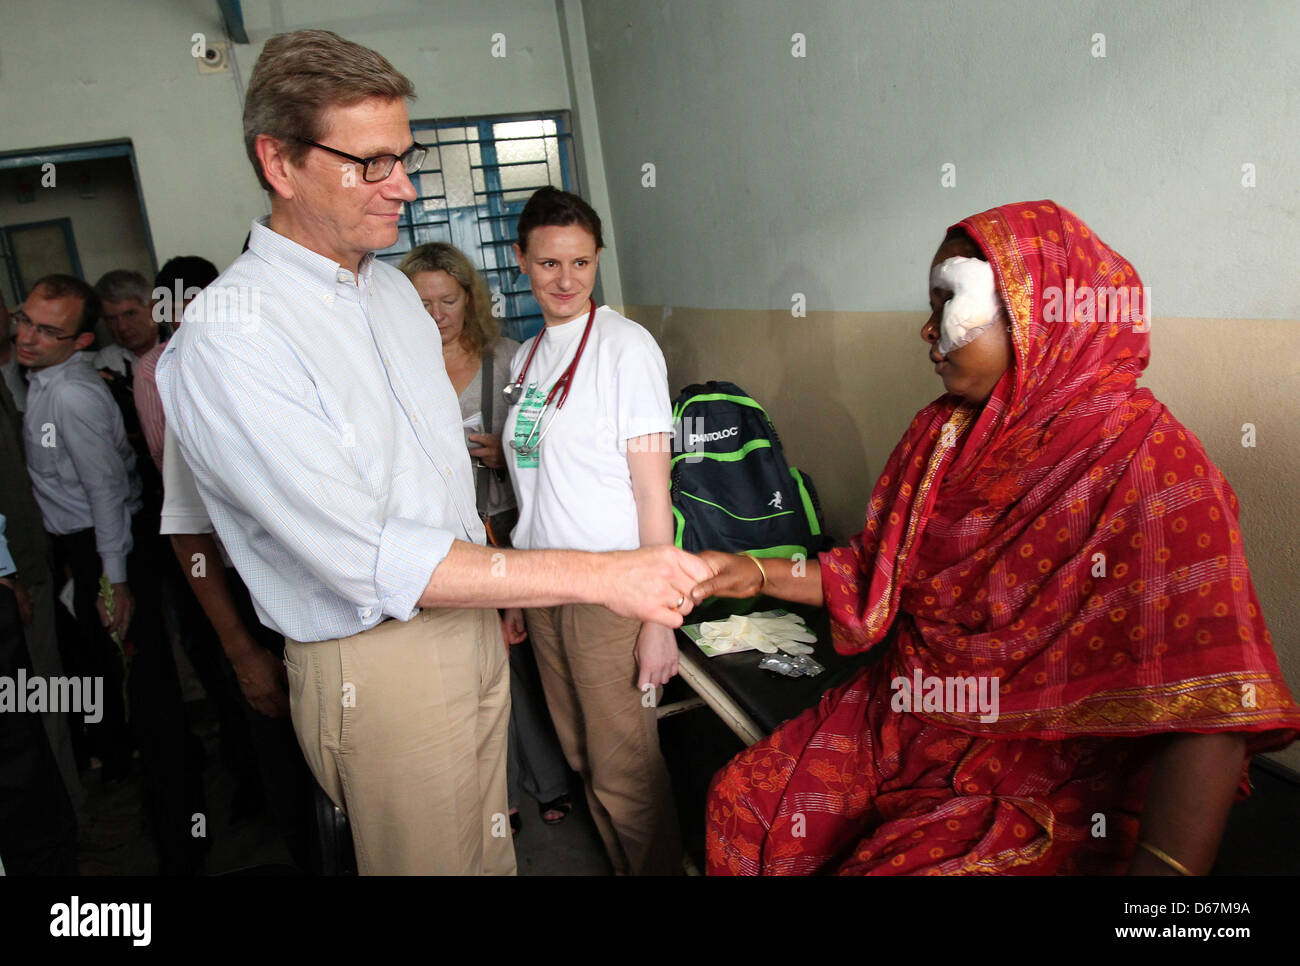 Bundesaußenminister Guido Westerwelle (FDP) besucht am Samstag (23.06.2012) muere Ärztin Anja Gebauer en einer Arztpraxis der Hilfsorganization "Ärzte für die 3. Welt' im von Korail tugurios en Dhaka (Bangladesch). Hier die deutsche Ärzte versorgen ehrenamtlich Bedürftigen. Foto: Jan Woitas dpa +++(c) dpa - Bildfunk+++ Foto de stock